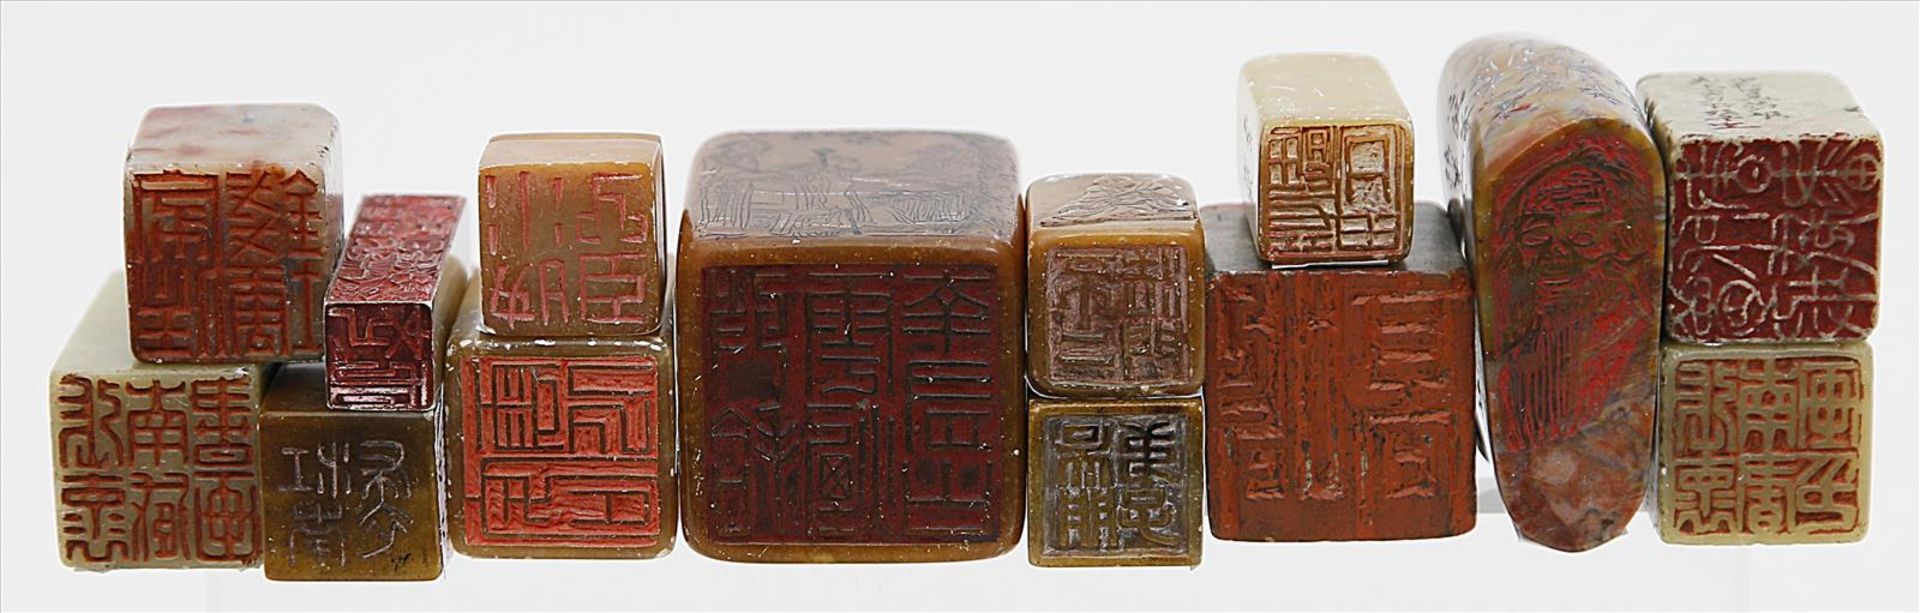 Sammlung von 14 Siegeln.Verschiedene Steine, dabei Steatit und Jade. Unterschiedliche - Bild 2 aus 2